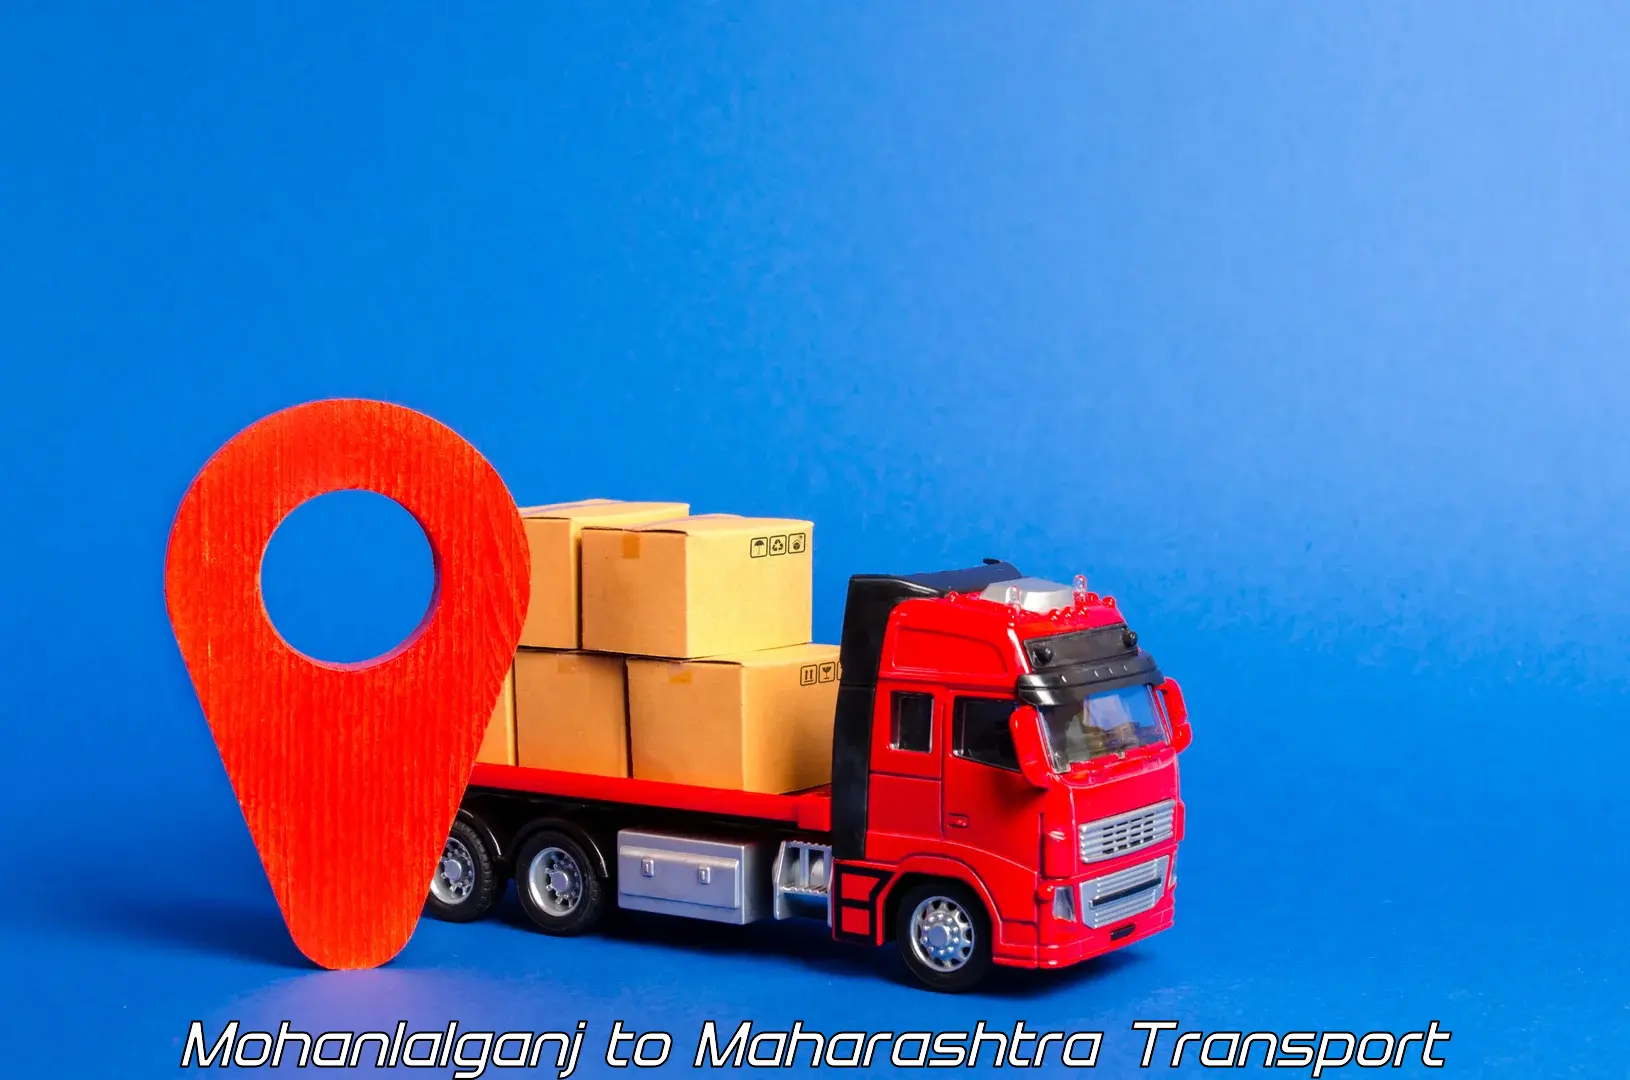 Daily transport service in Mohanlalganj to Maharashtra